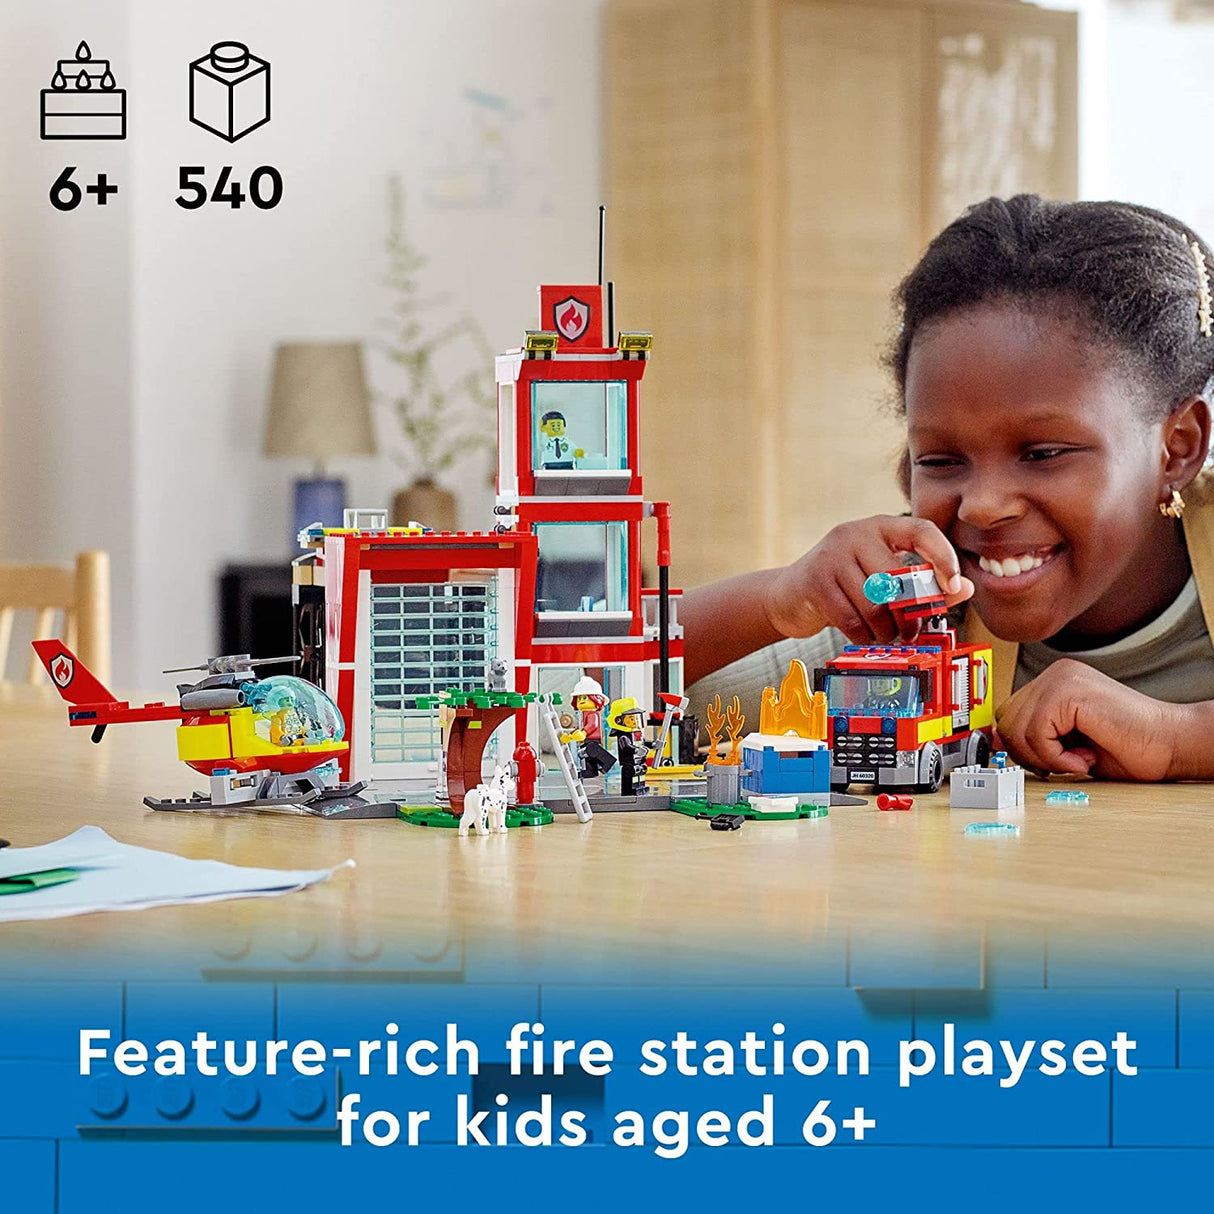 LEGO City Fire Station 60320  (540 piezas)